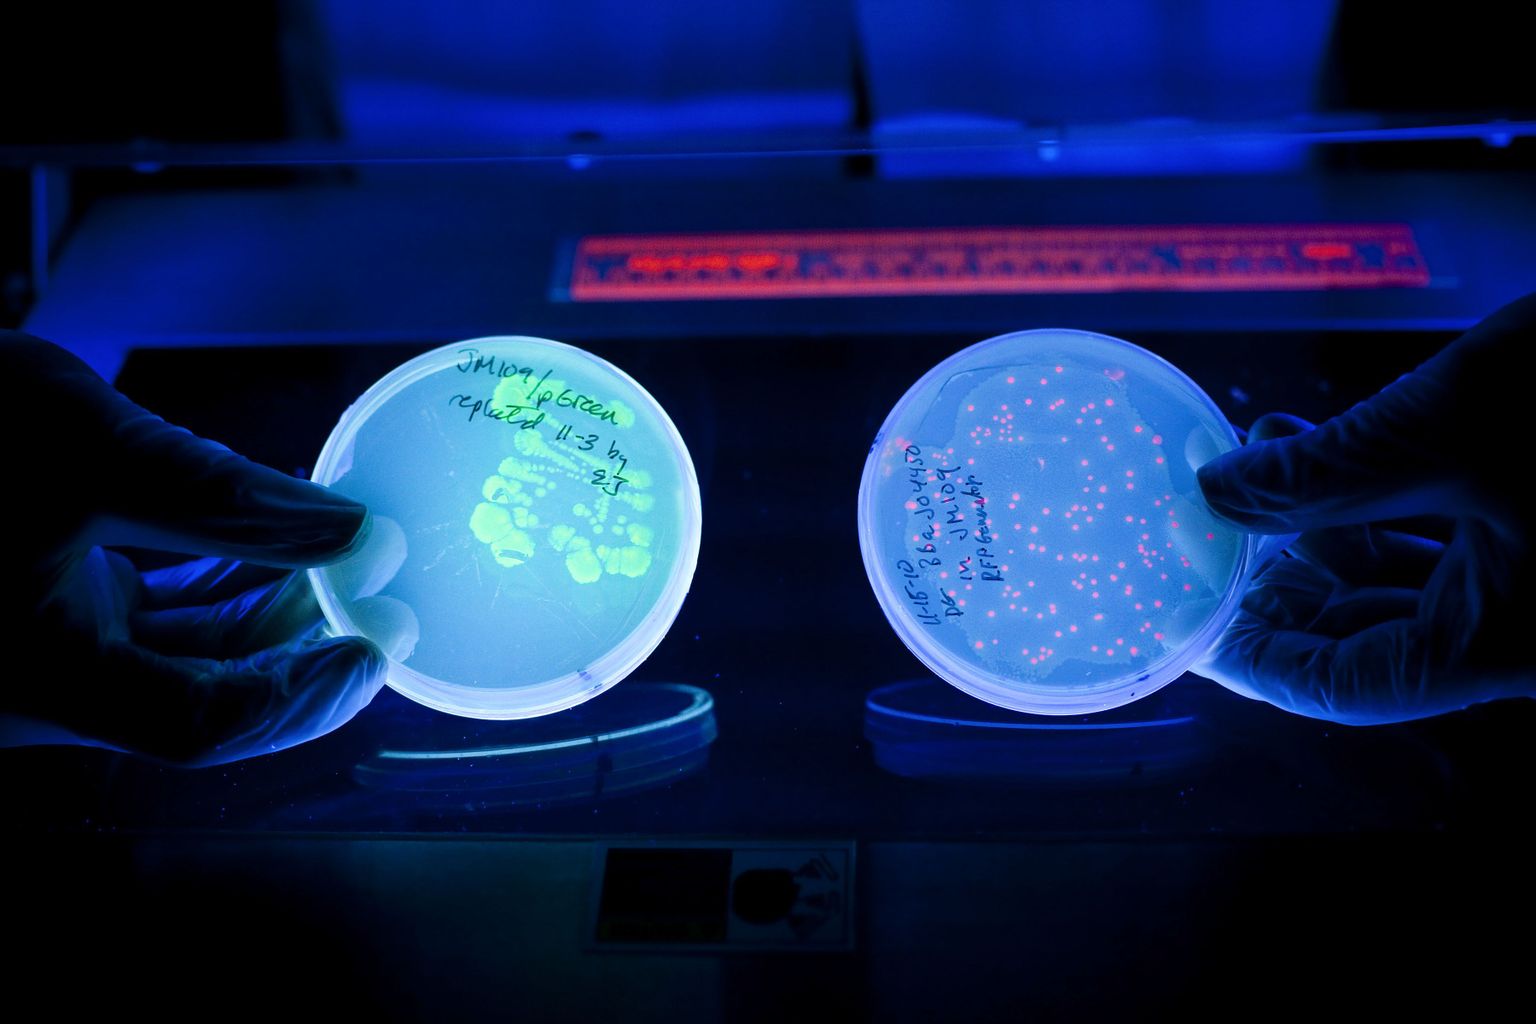 Briti teadlased on leiutanud uudse E. coli bakteri põhineva GMO-hõõgniidi. Pilt on illustratiivne.